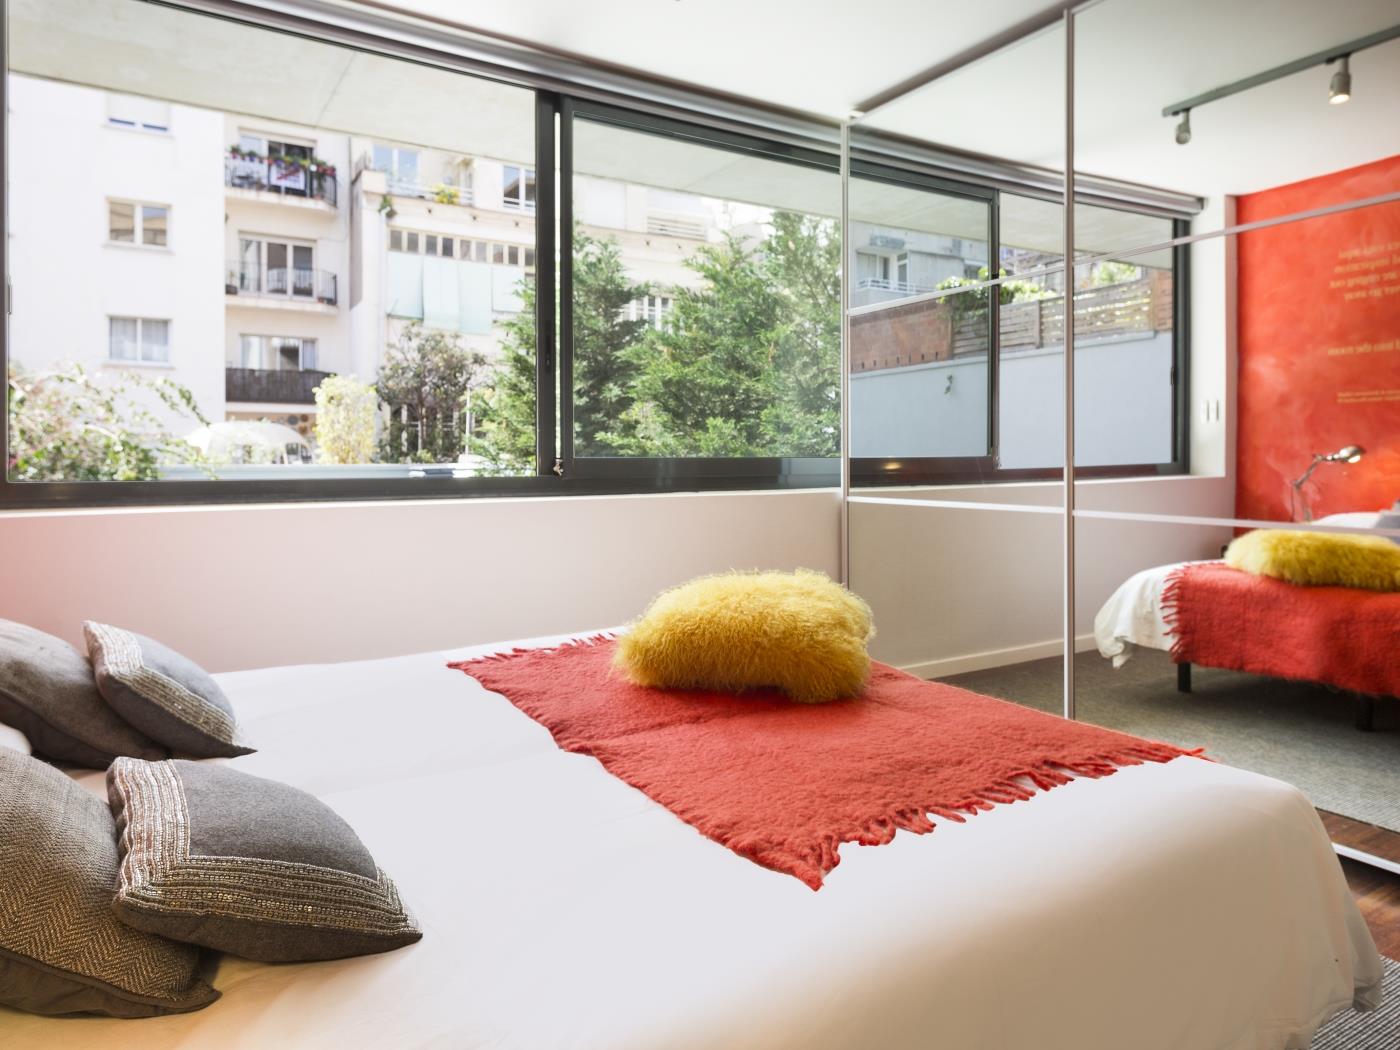 Moderne Maisonette mit eigenem Garten und Pool - My Space Barcelona Appartementen